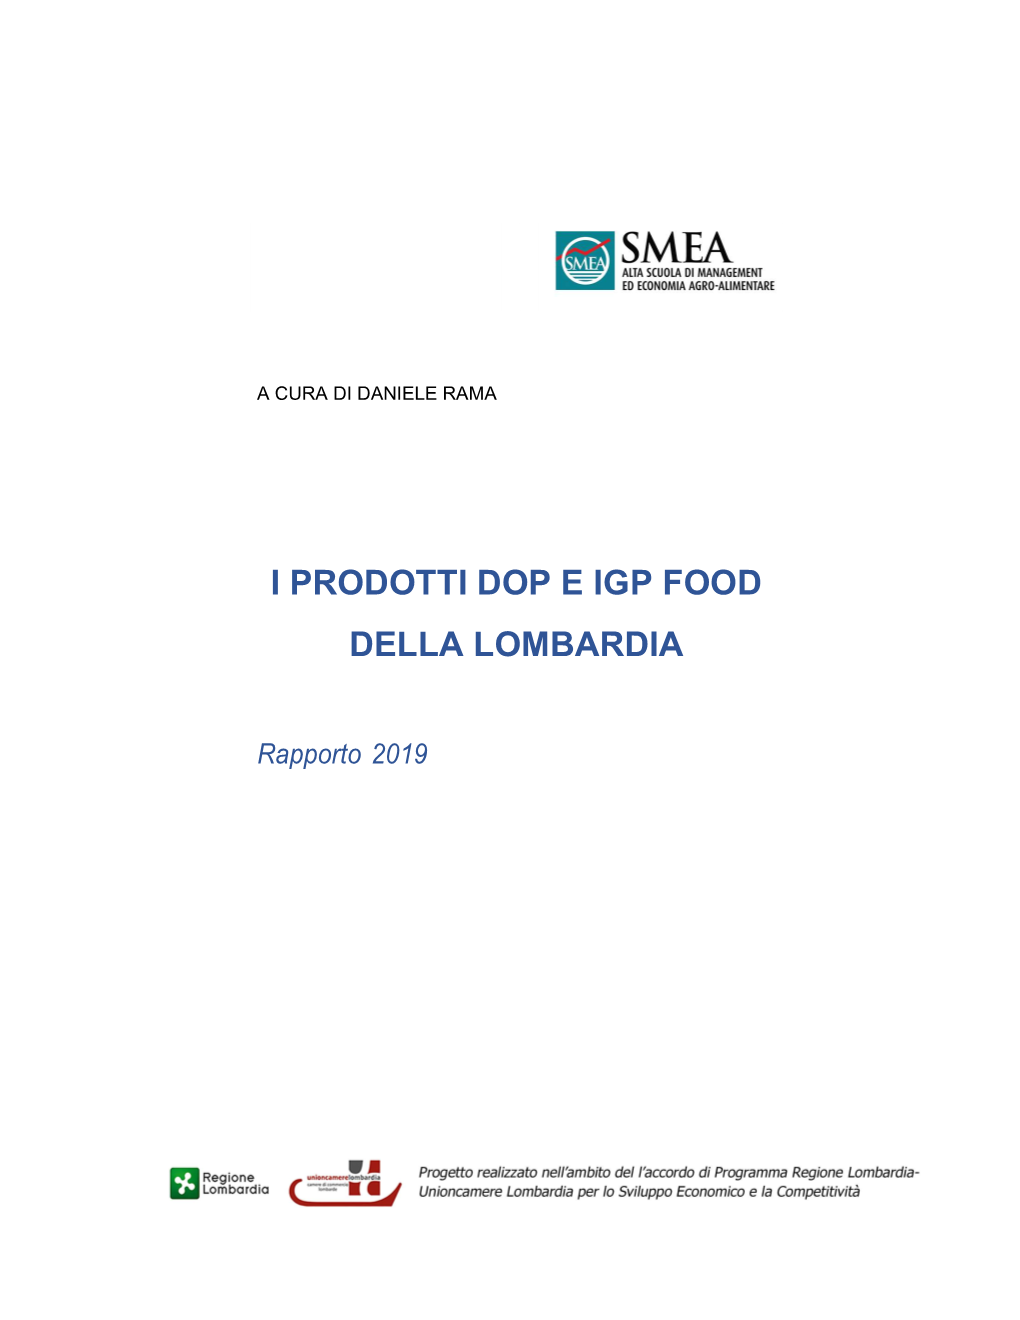 I Prodotti Dop E Igp Food Della Lombardia